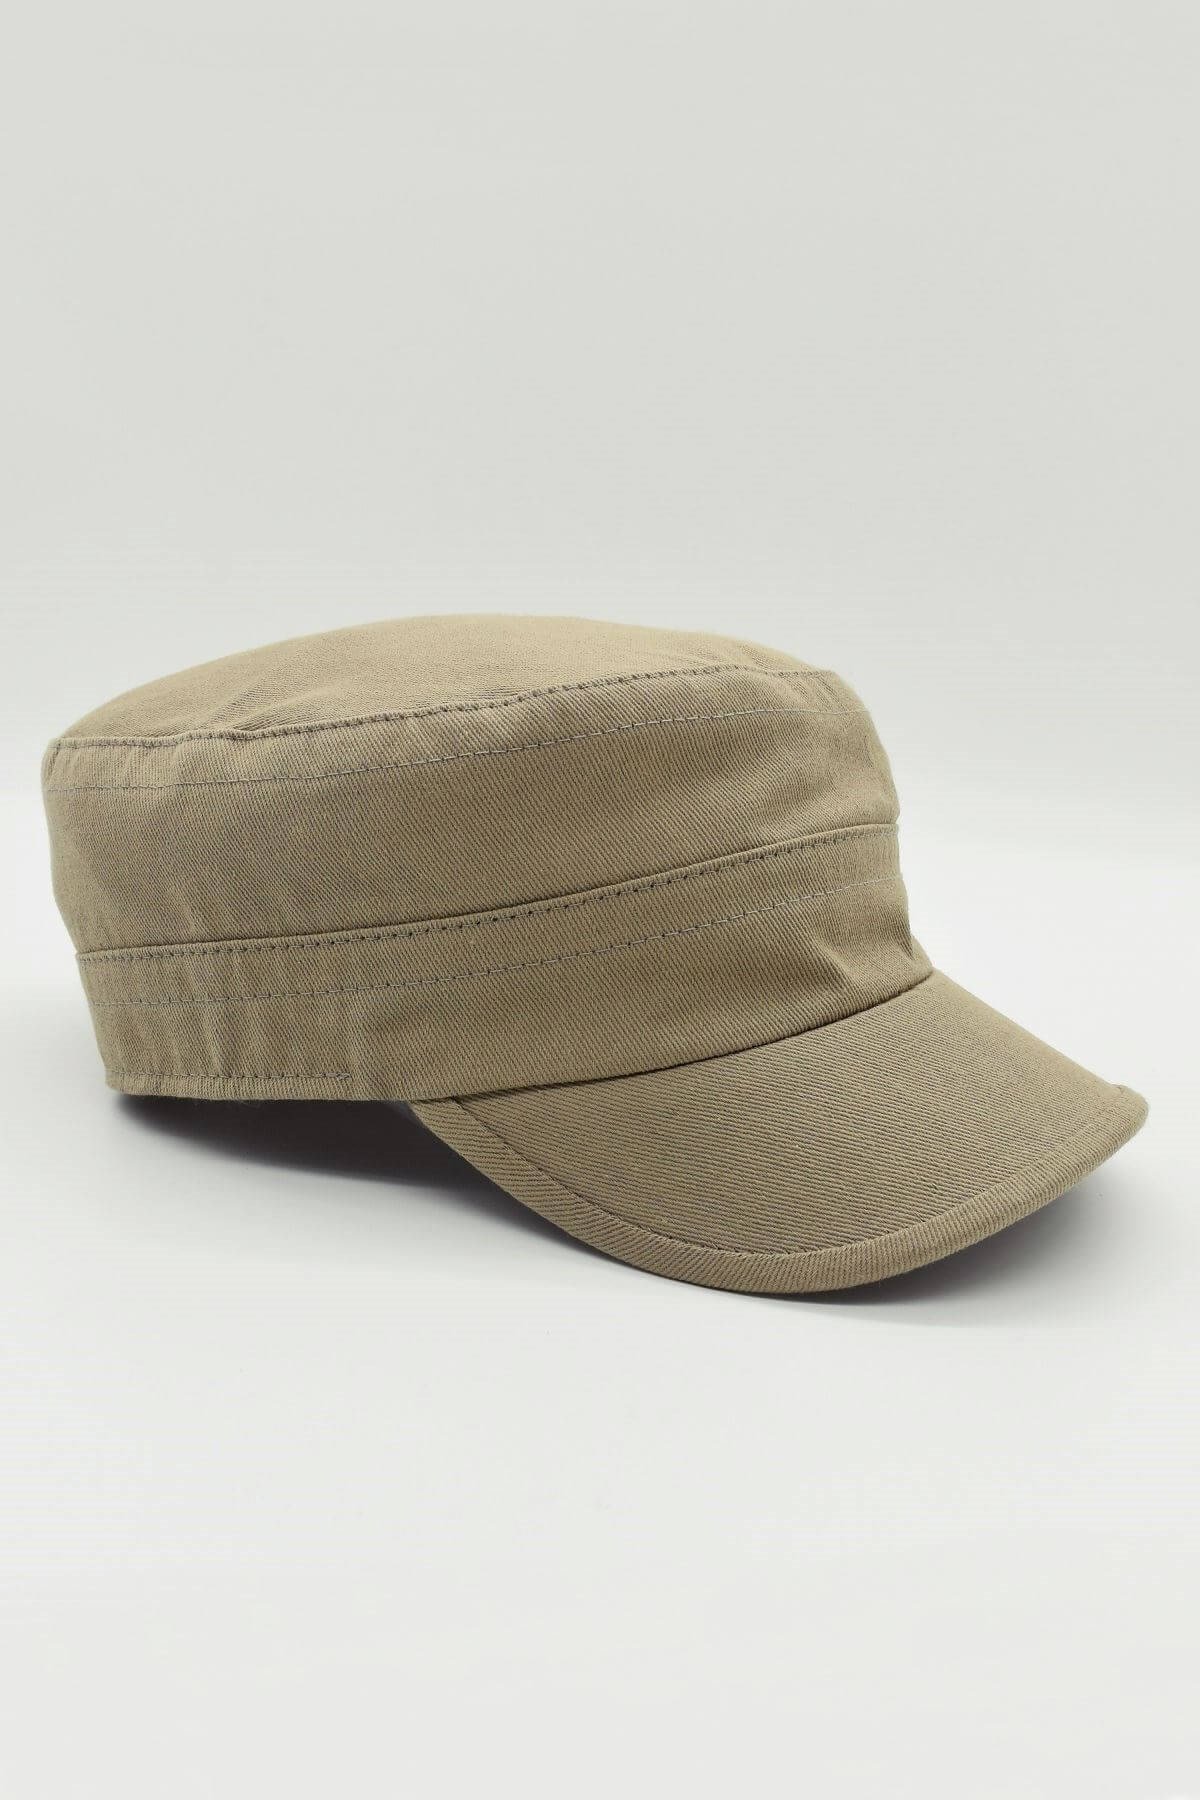 Külah Kastro Model Pamuk Yazlık Erkek Şapka - Bej KLH0532